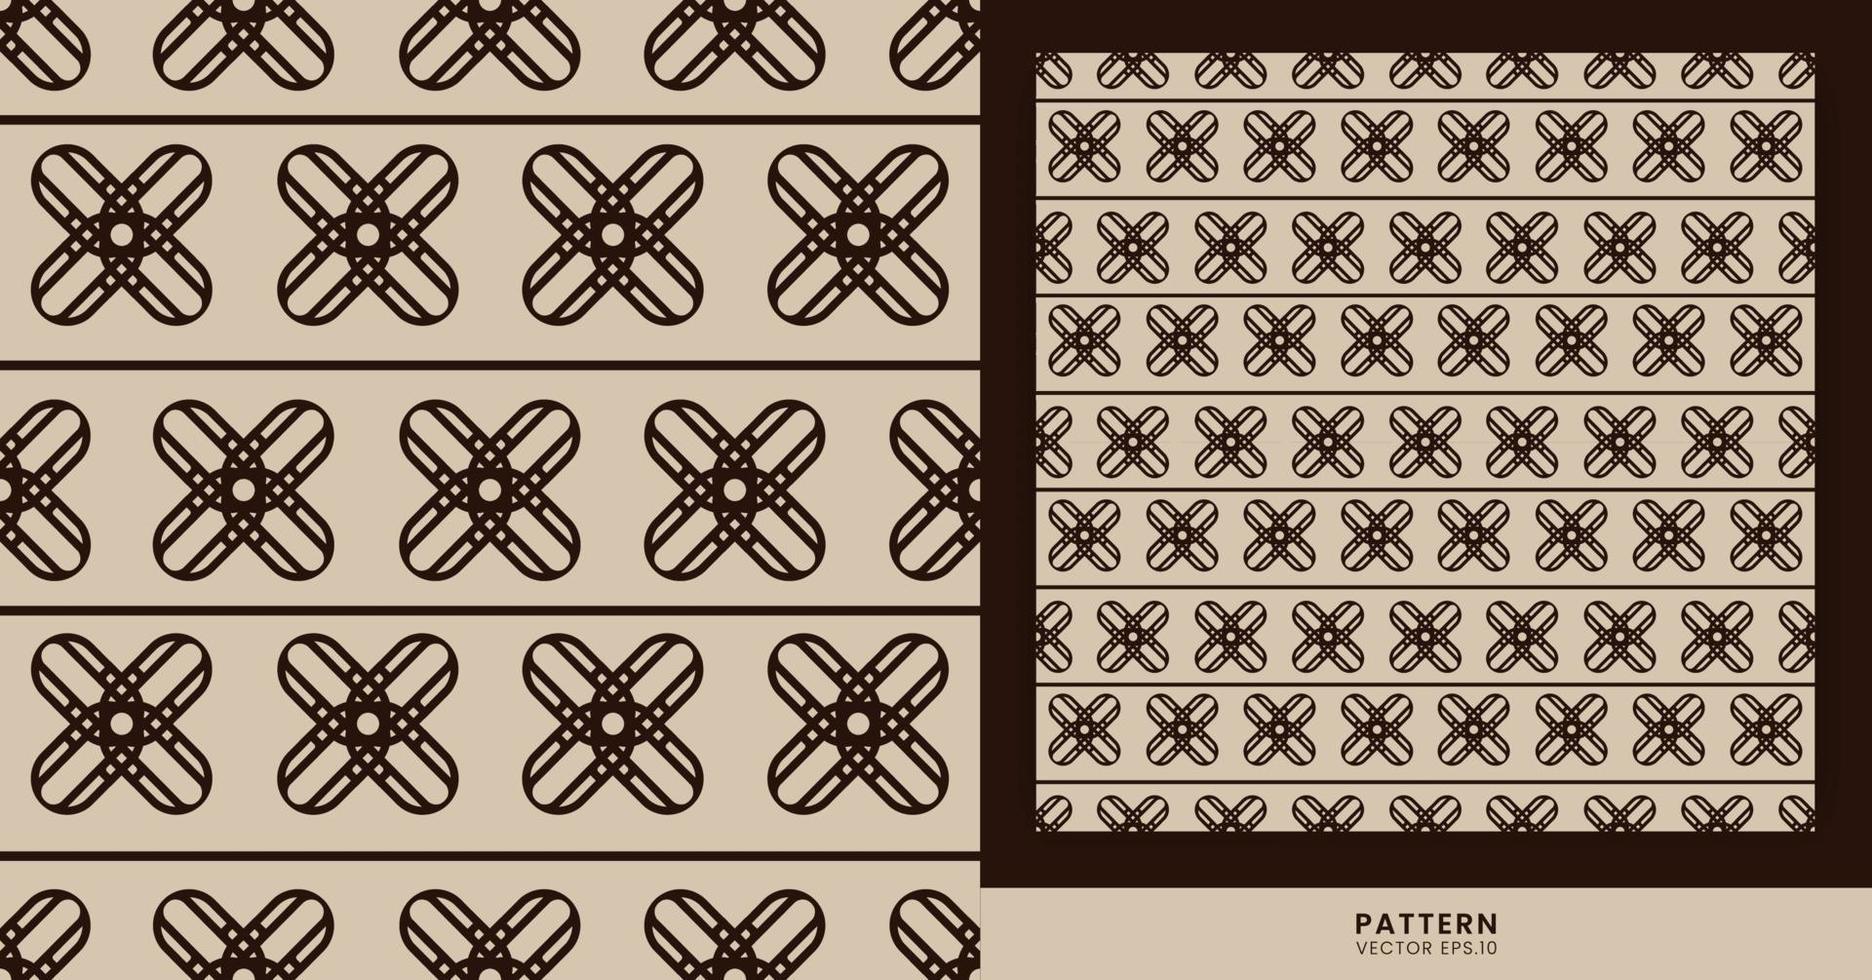 patrones con temas: los motivos de rayas marrones con matices clásicos y antiguos sobre un fondo marrón se pueden usar para diseñar ropa, libros, regalos u otros diseños. vector